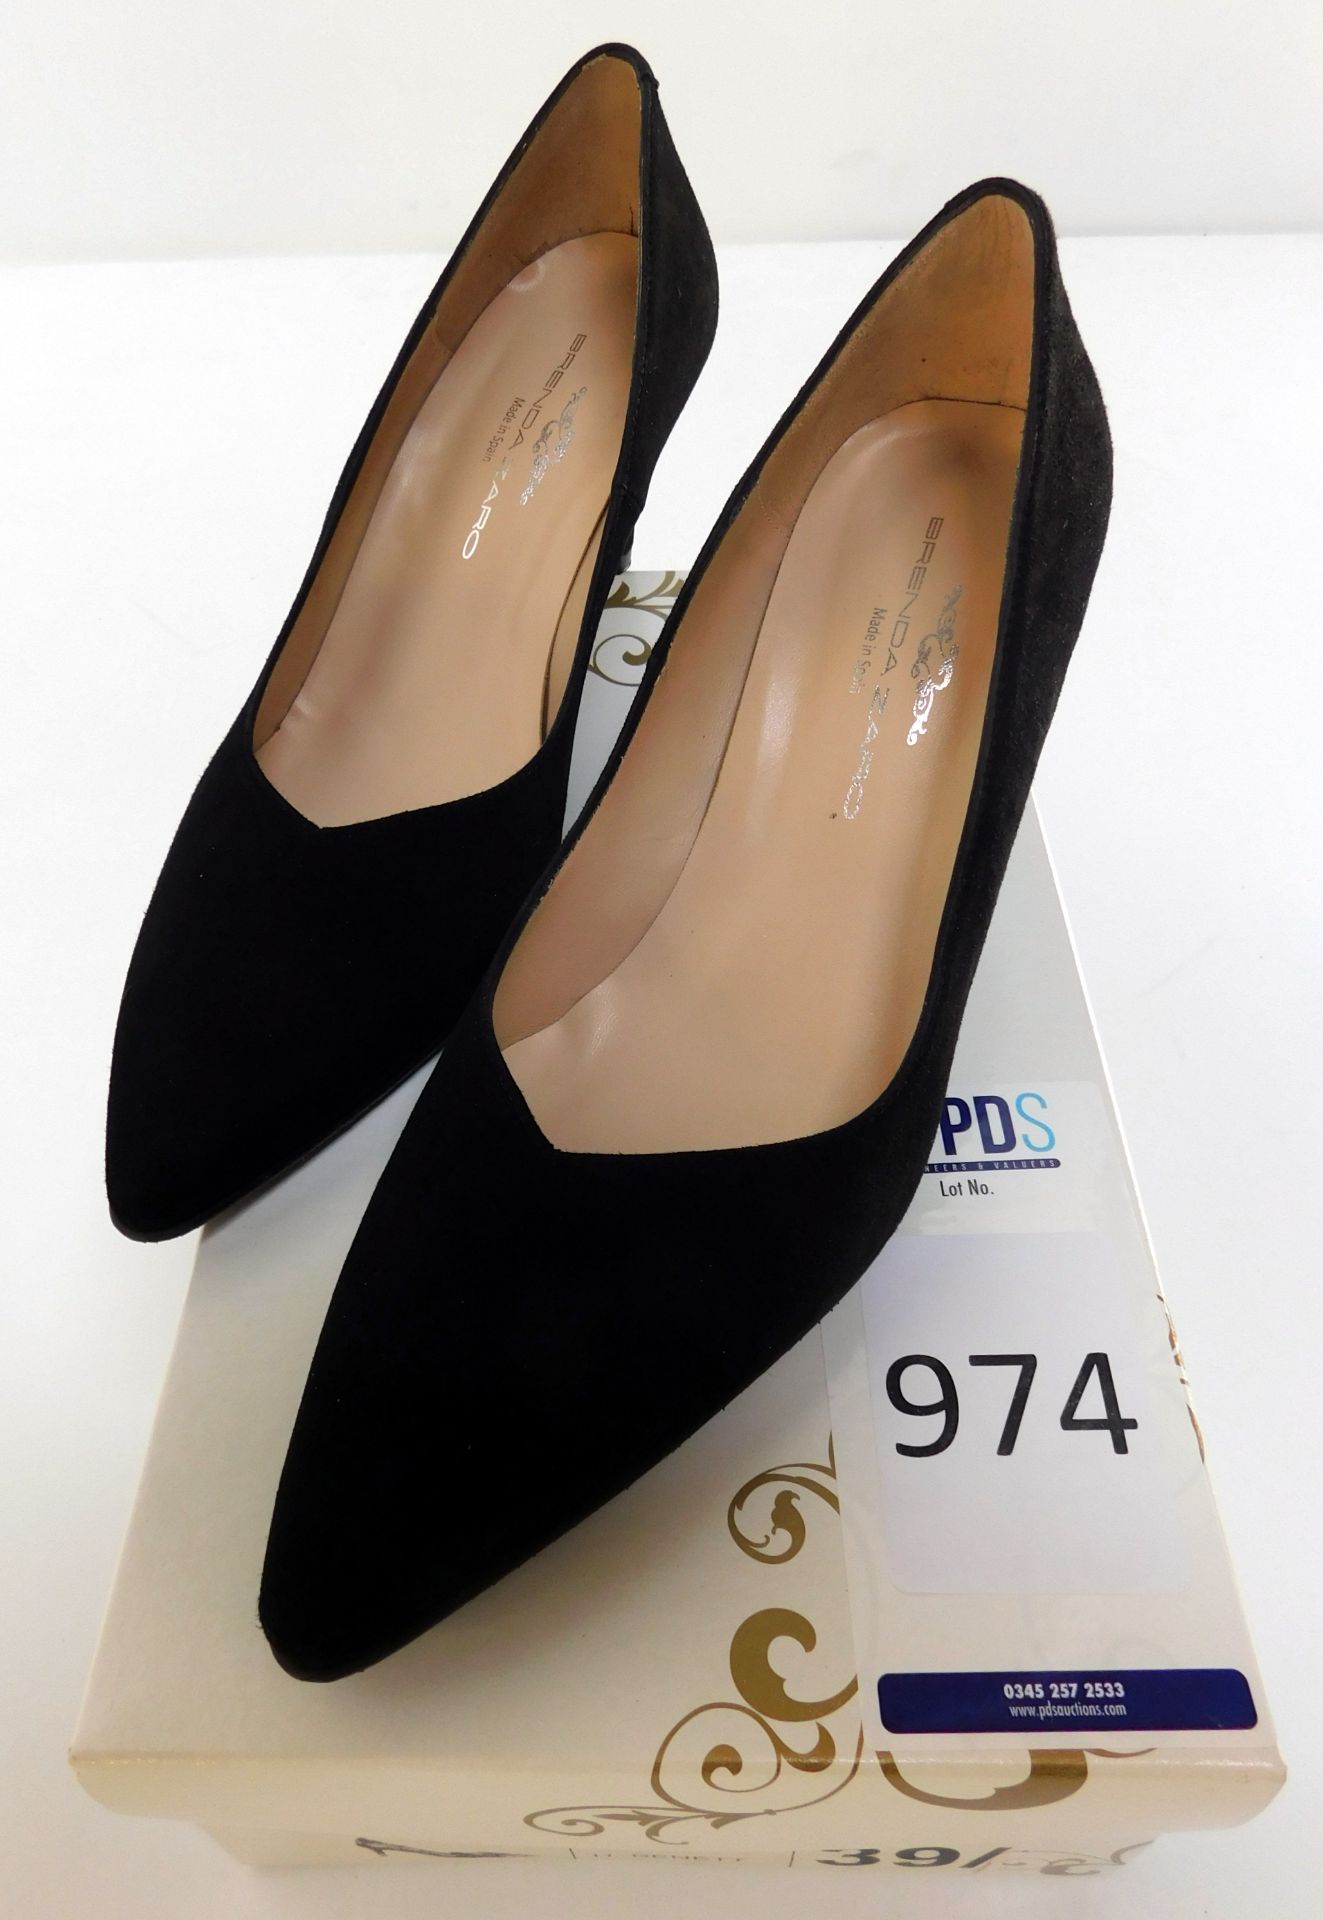 Brenda Zaro H. Bennet Women’s Heels, Model: T1070E, Style: 063570/3, Shade: Black Suede, Size 39/ (